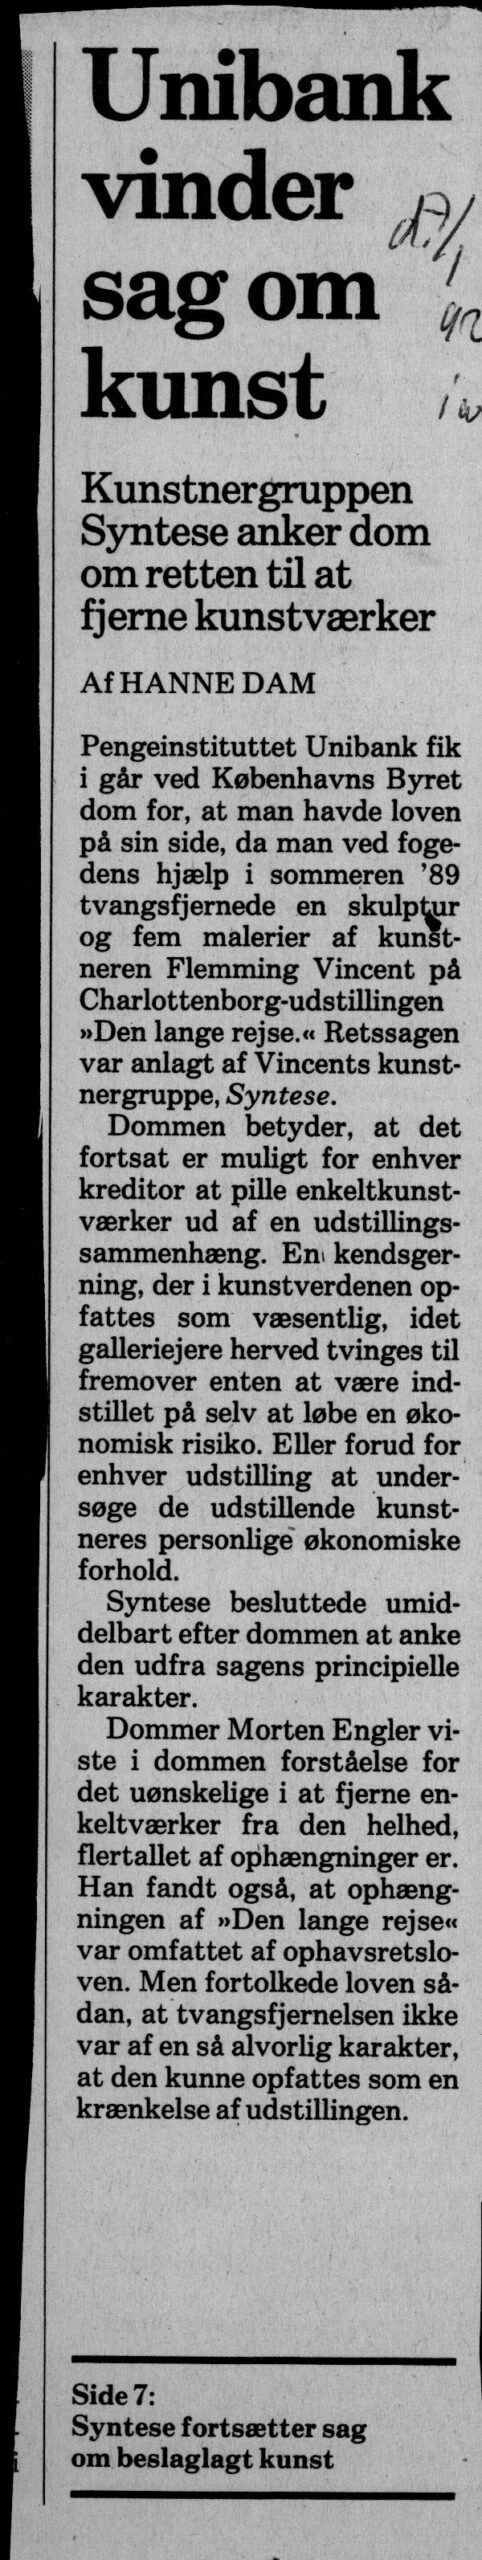 Unibank vinder sag om kunst. Omtale (Retssag. Den lange rejse, Charlottenborg, København 1989). Hanne Dam. Information.